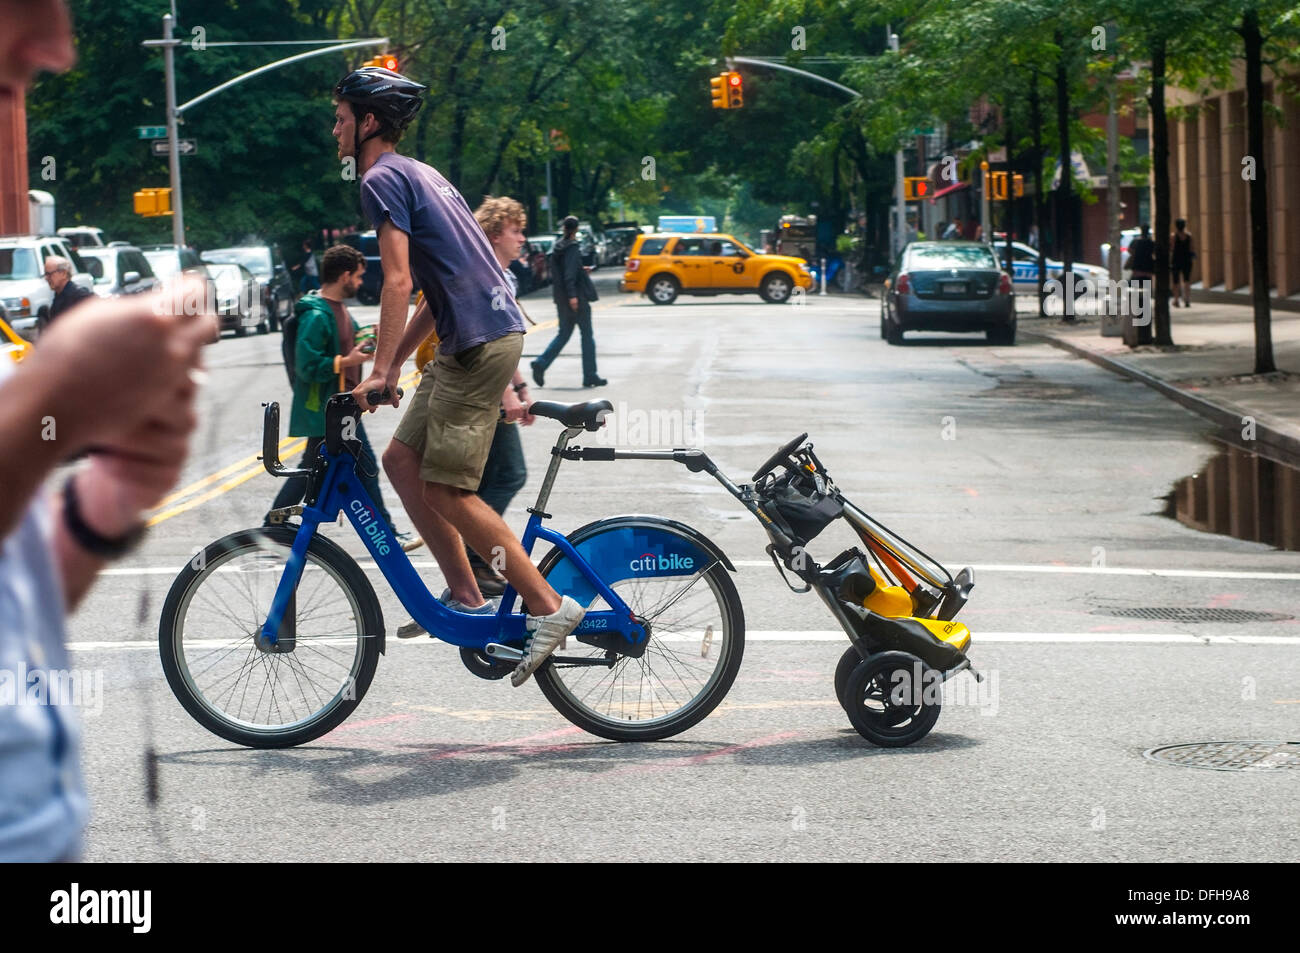 New York, NY 13 août 2013 l'homme sur un CitiBike avec une remorque. Banque D'Images